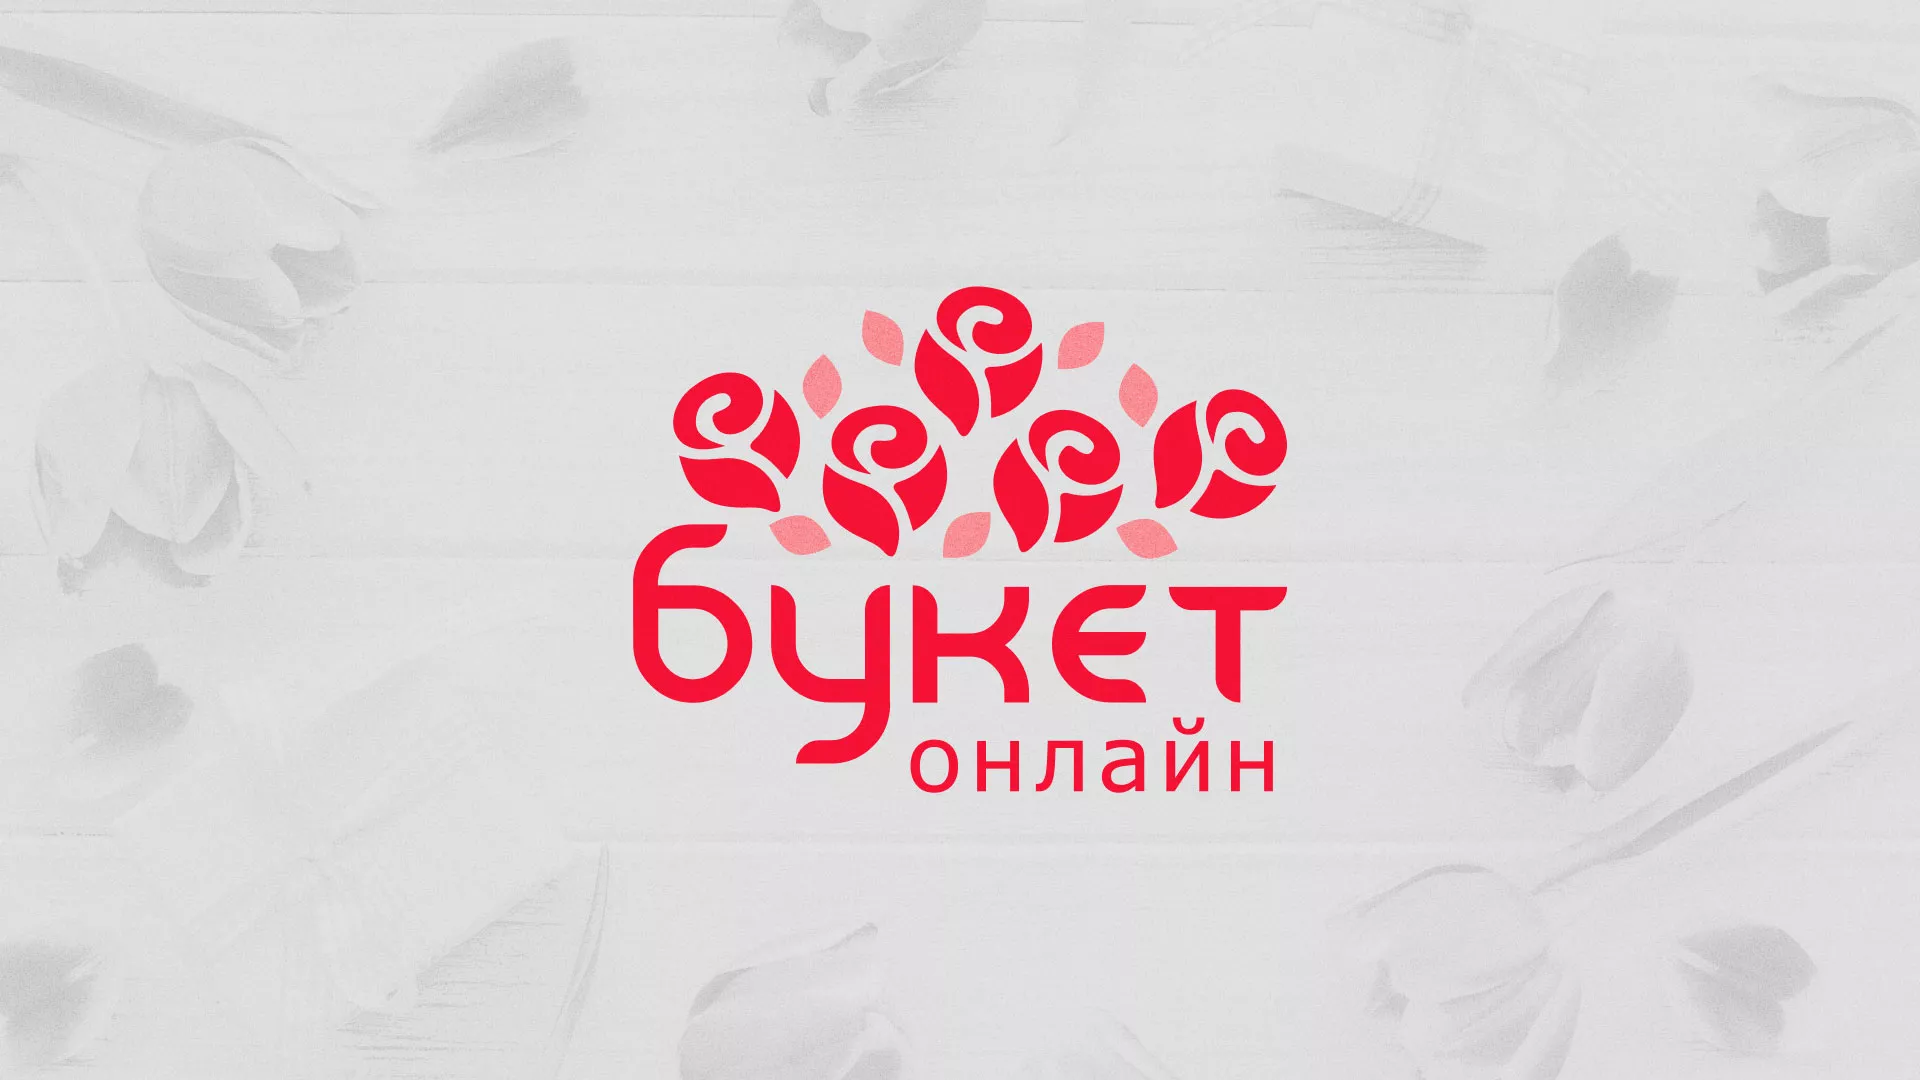 Создание интернет-магазина «Букет-онлайн» по цветам в Петровске-Забайкальском